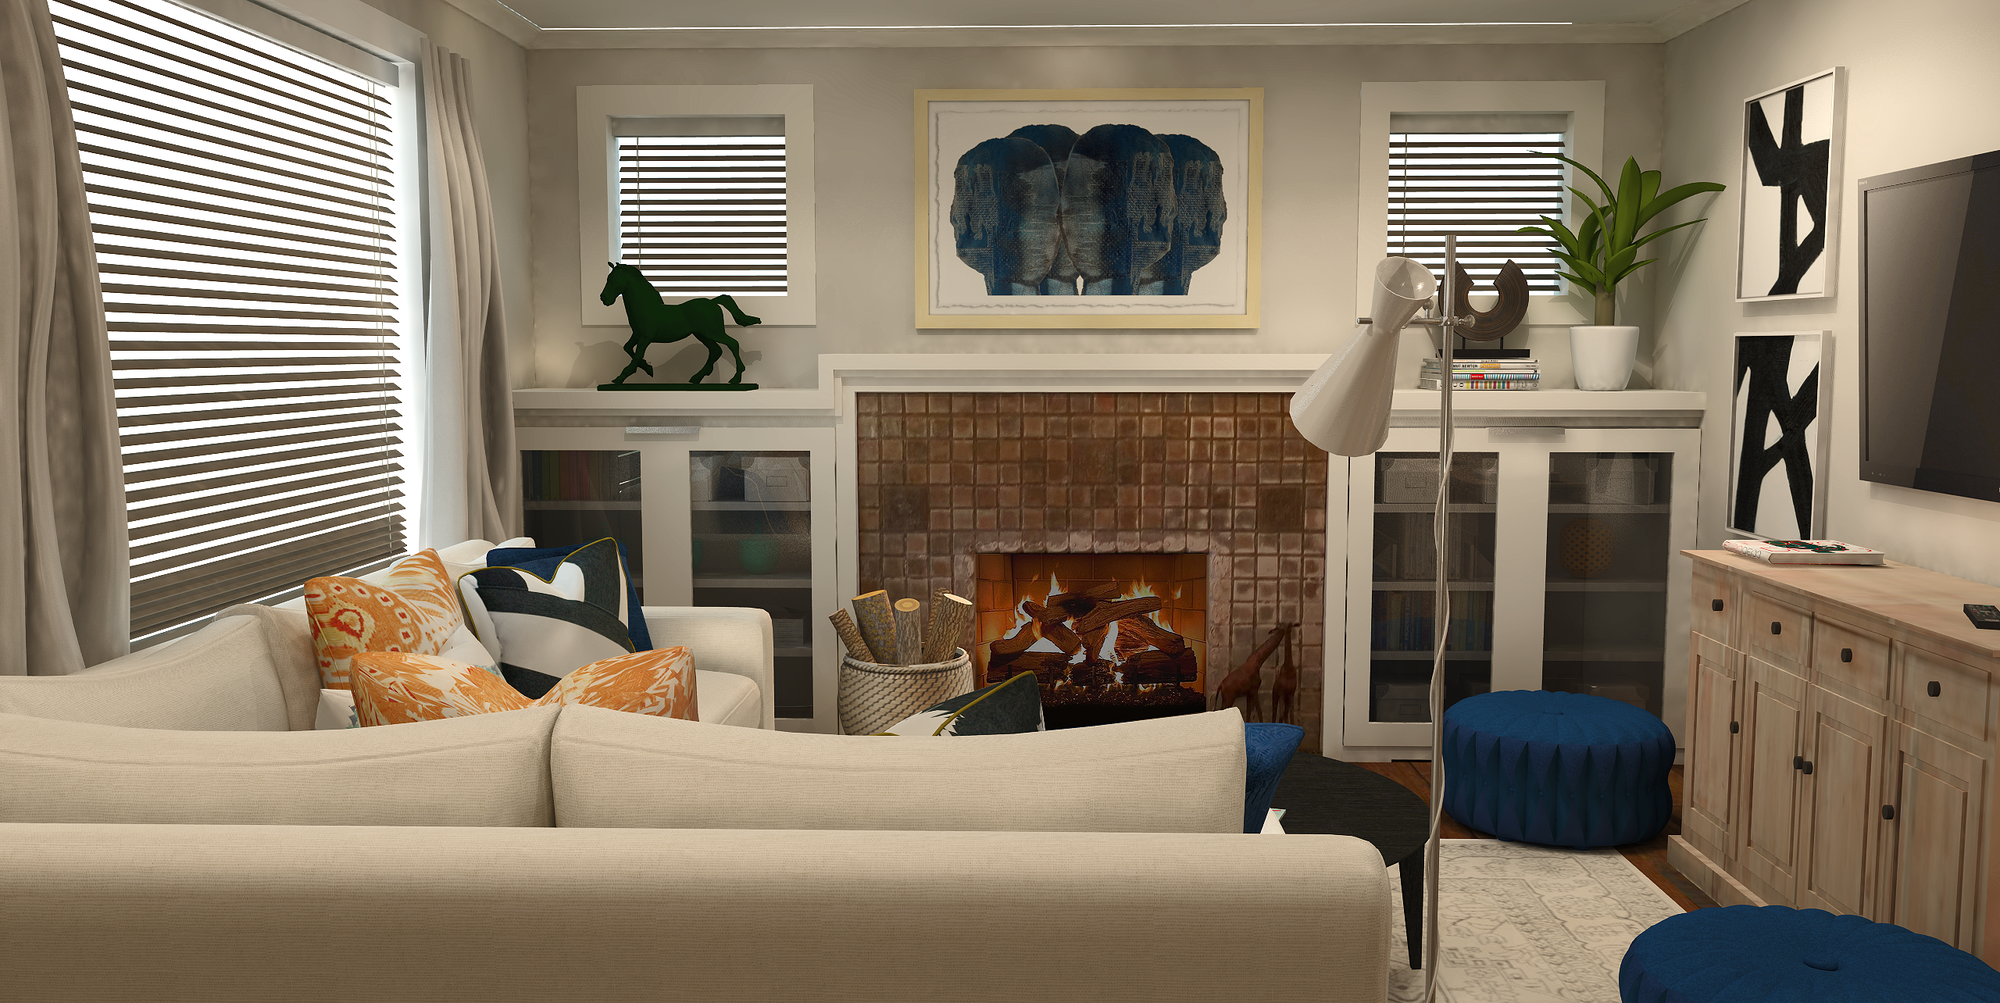 Online Living Dining Room Design interior design samples 2